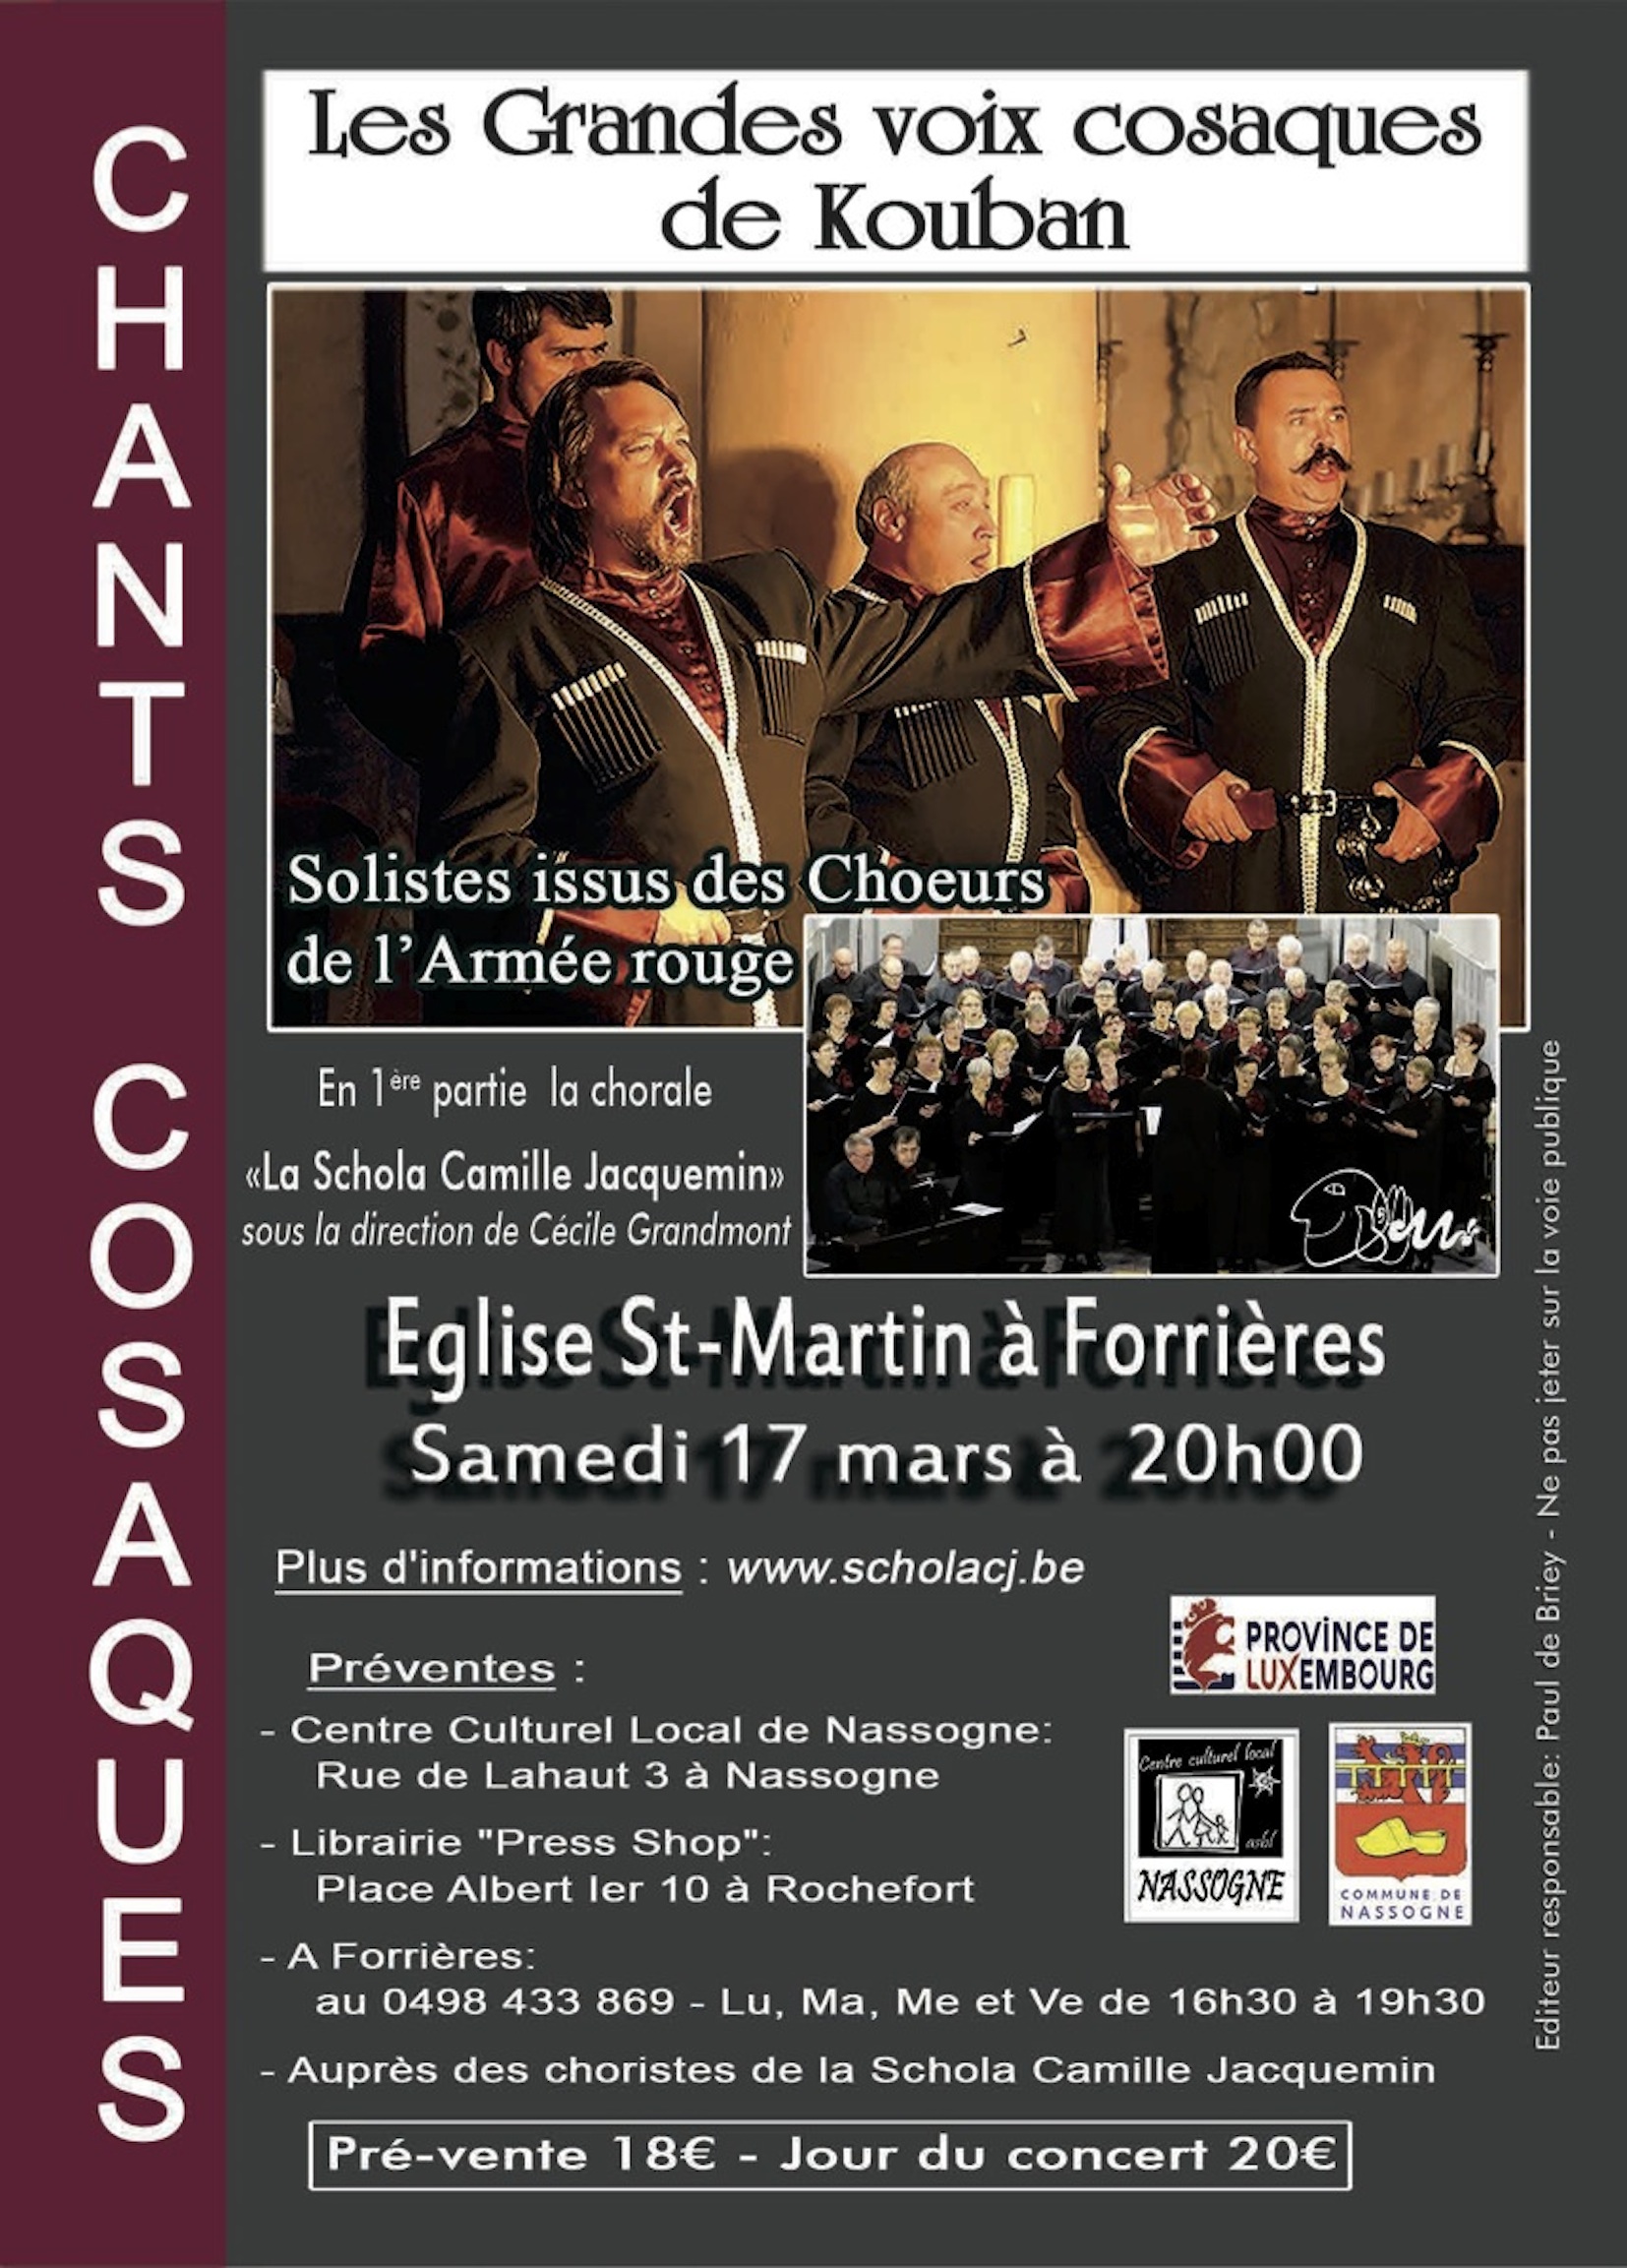 Affiche du concert du 17 mars 2018, La Schola Camille Jacquemin avec les Grandes Voix Cosaques de Kouban, le 17 mars 2018